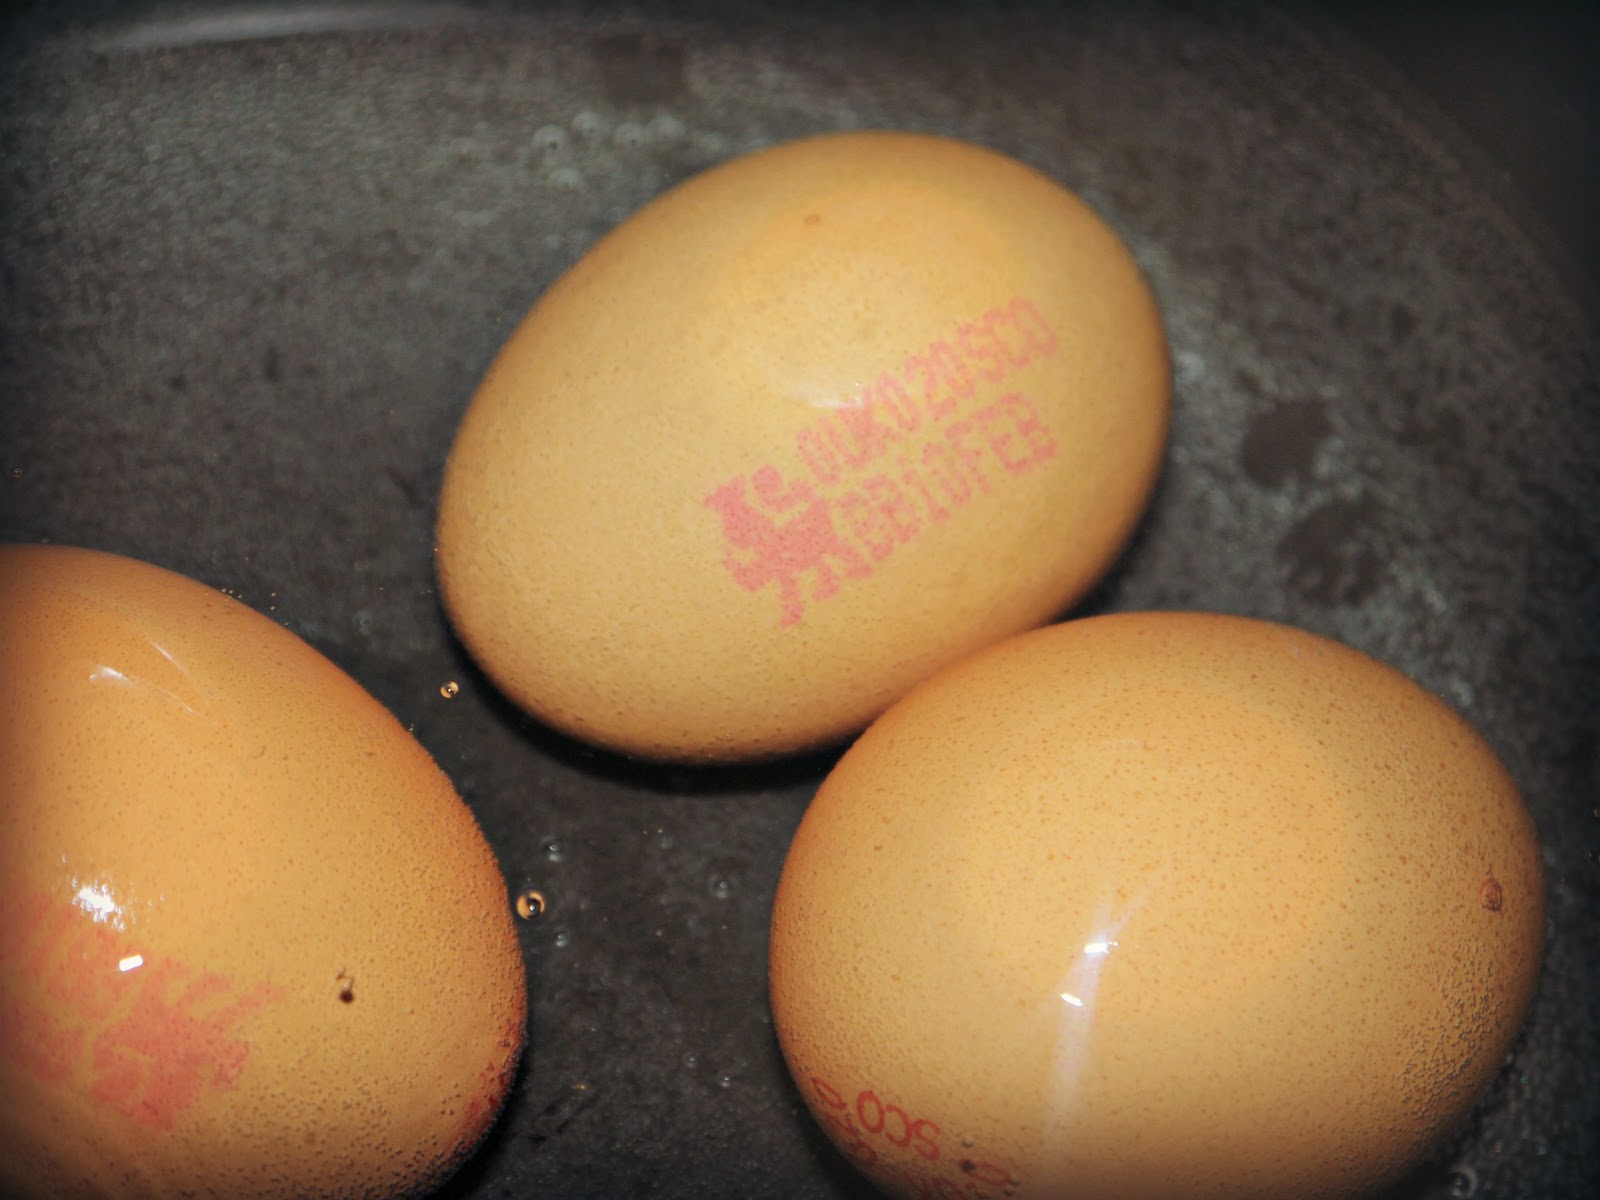 eggs, egg safety